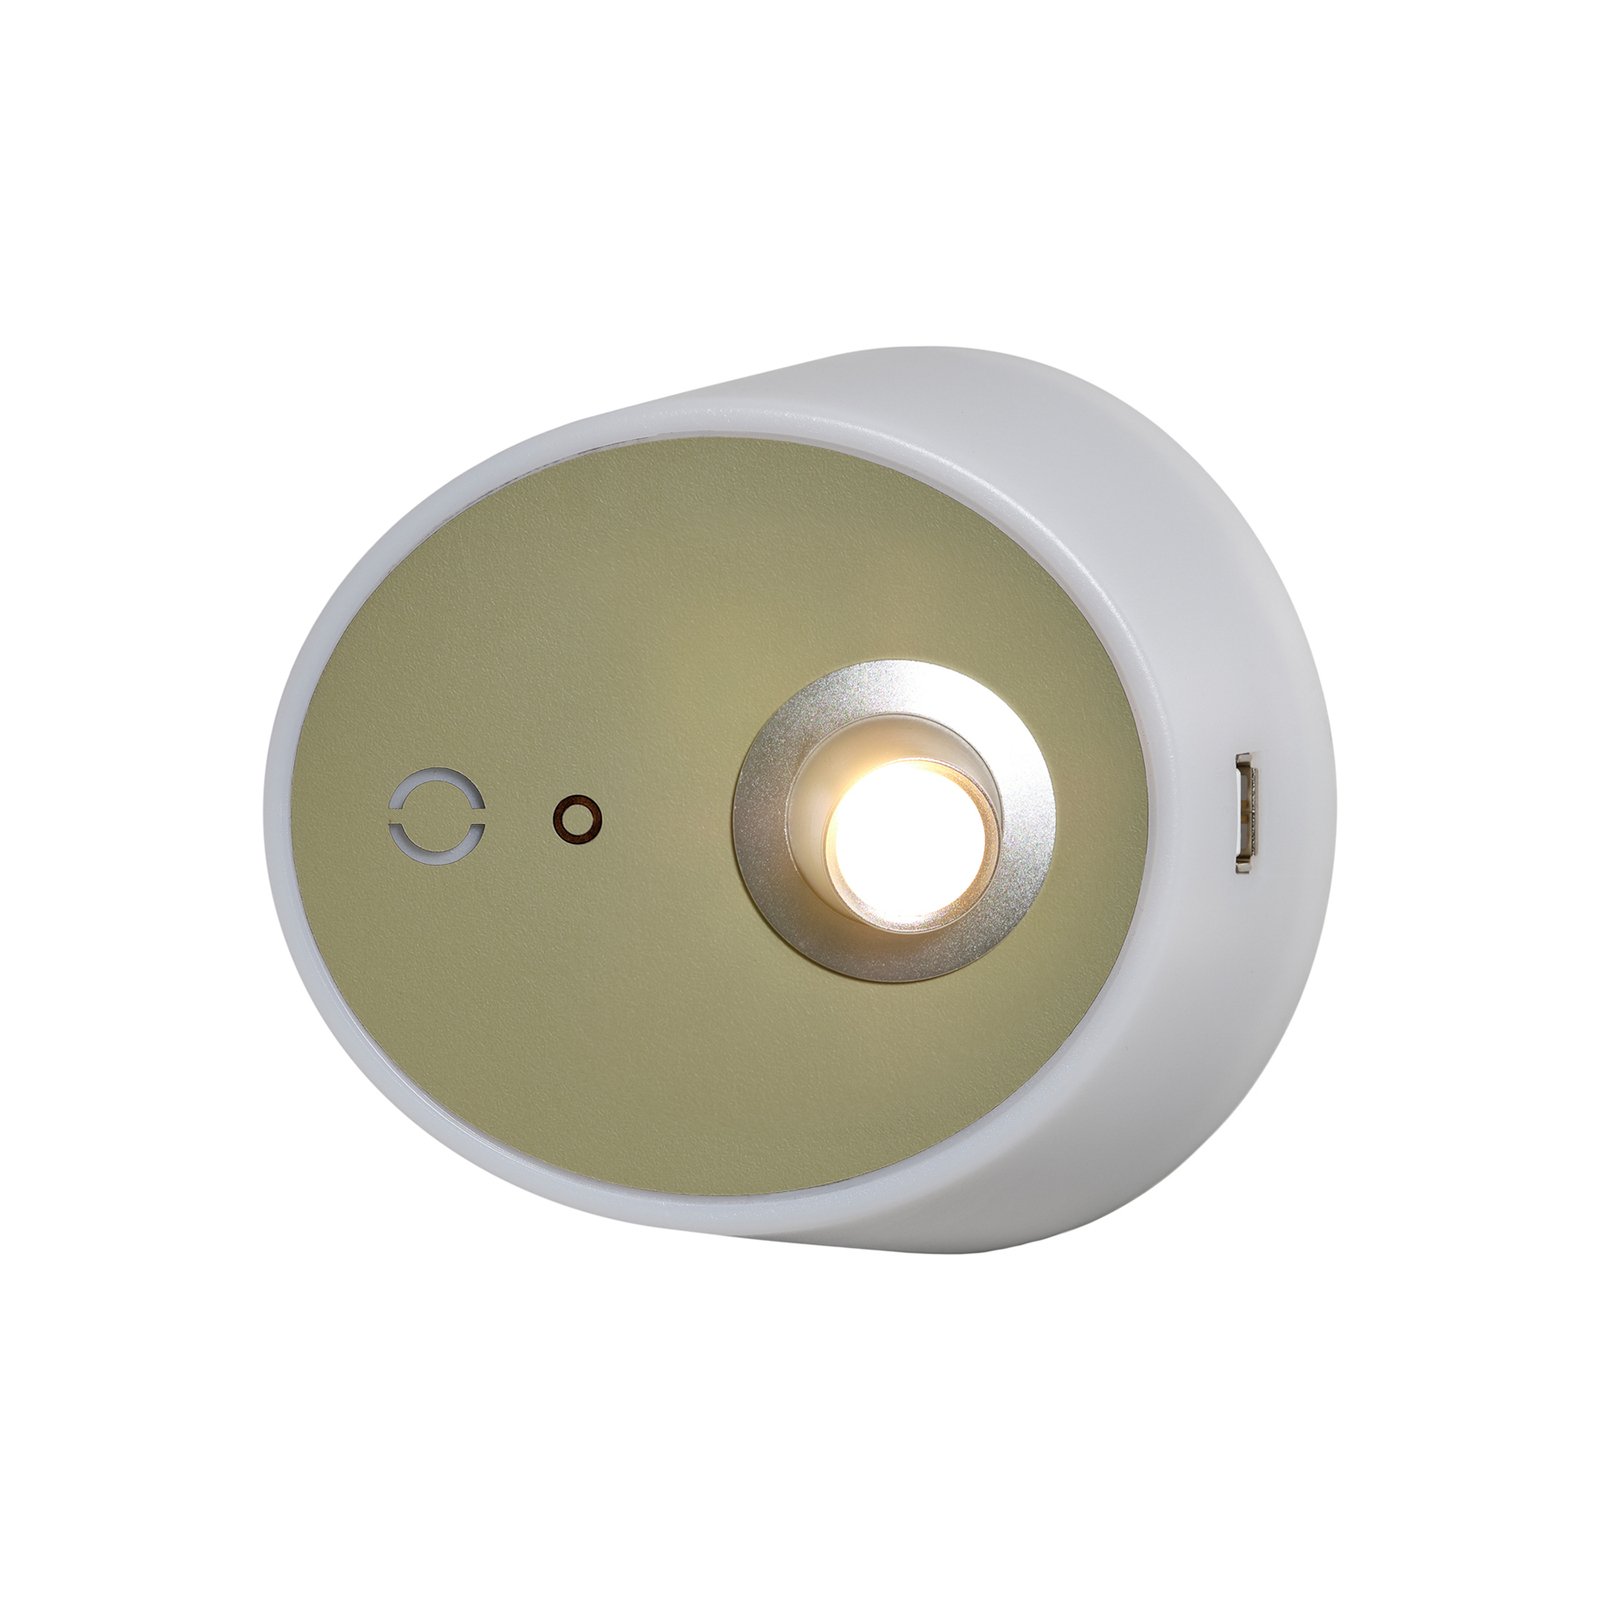 LED svetlo Zoom, bodové svetlá, výstup USB, kaki